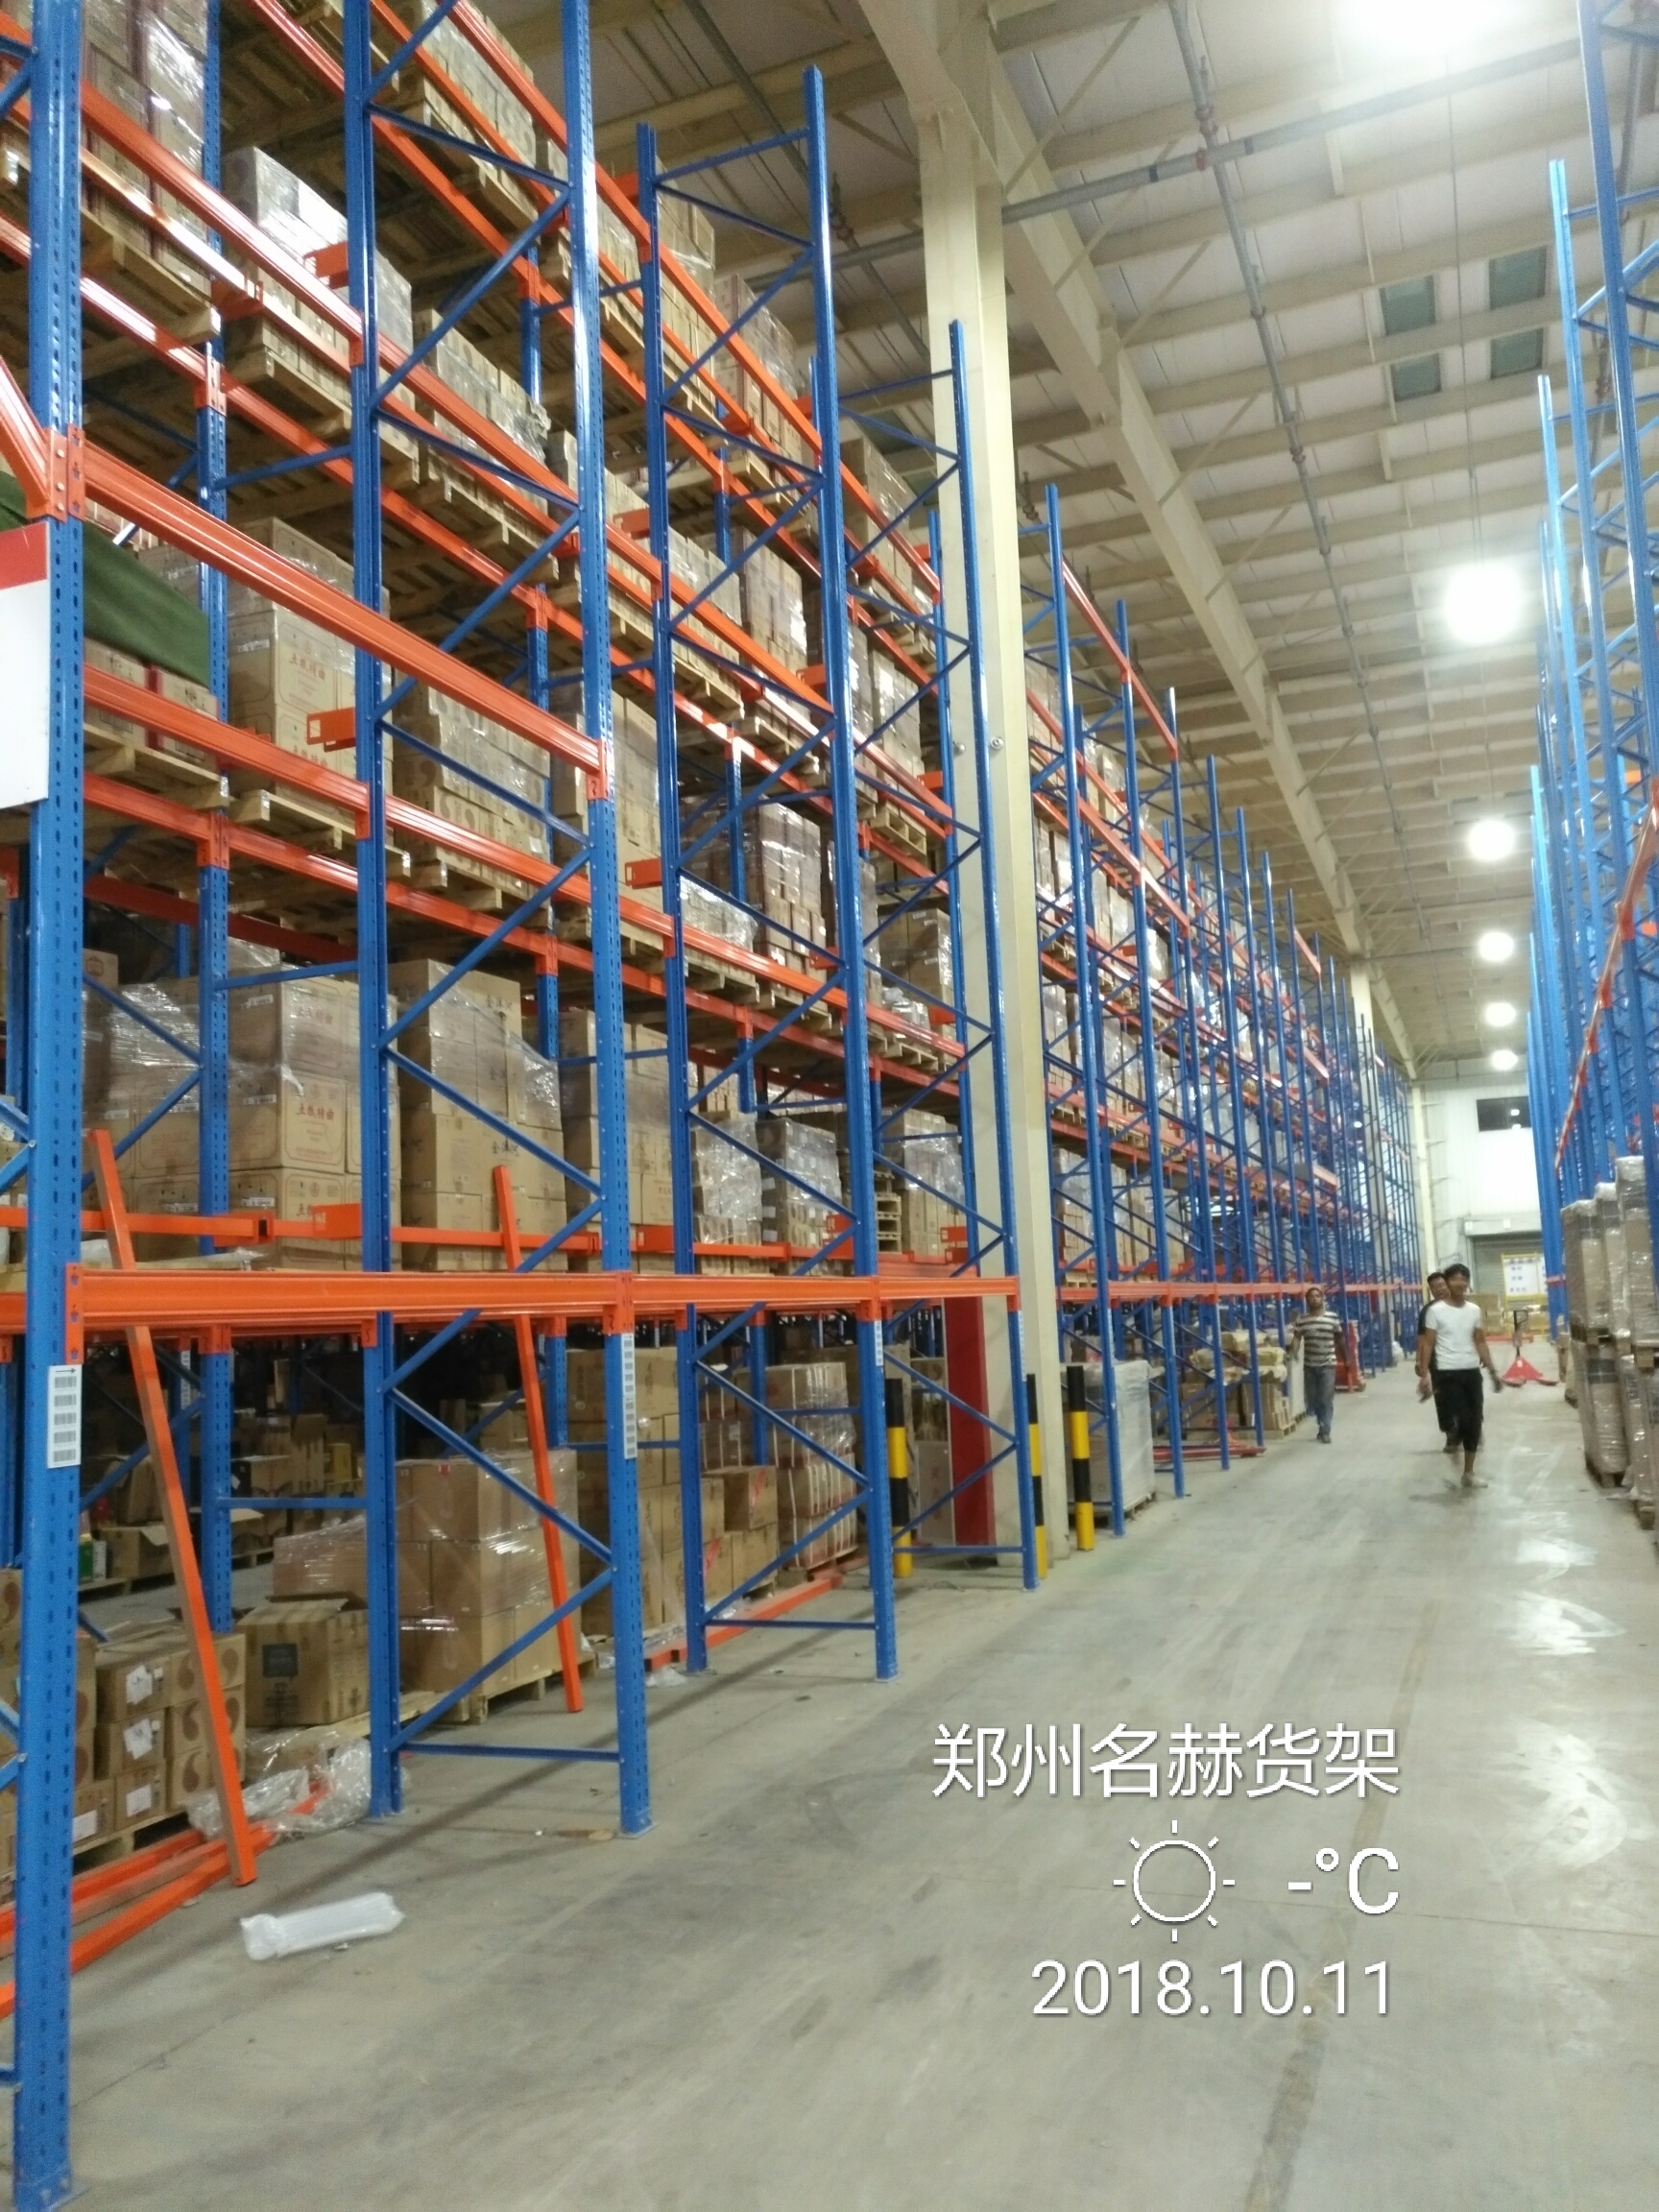 中遠海運集團鄭州八米高位貨架倉庫